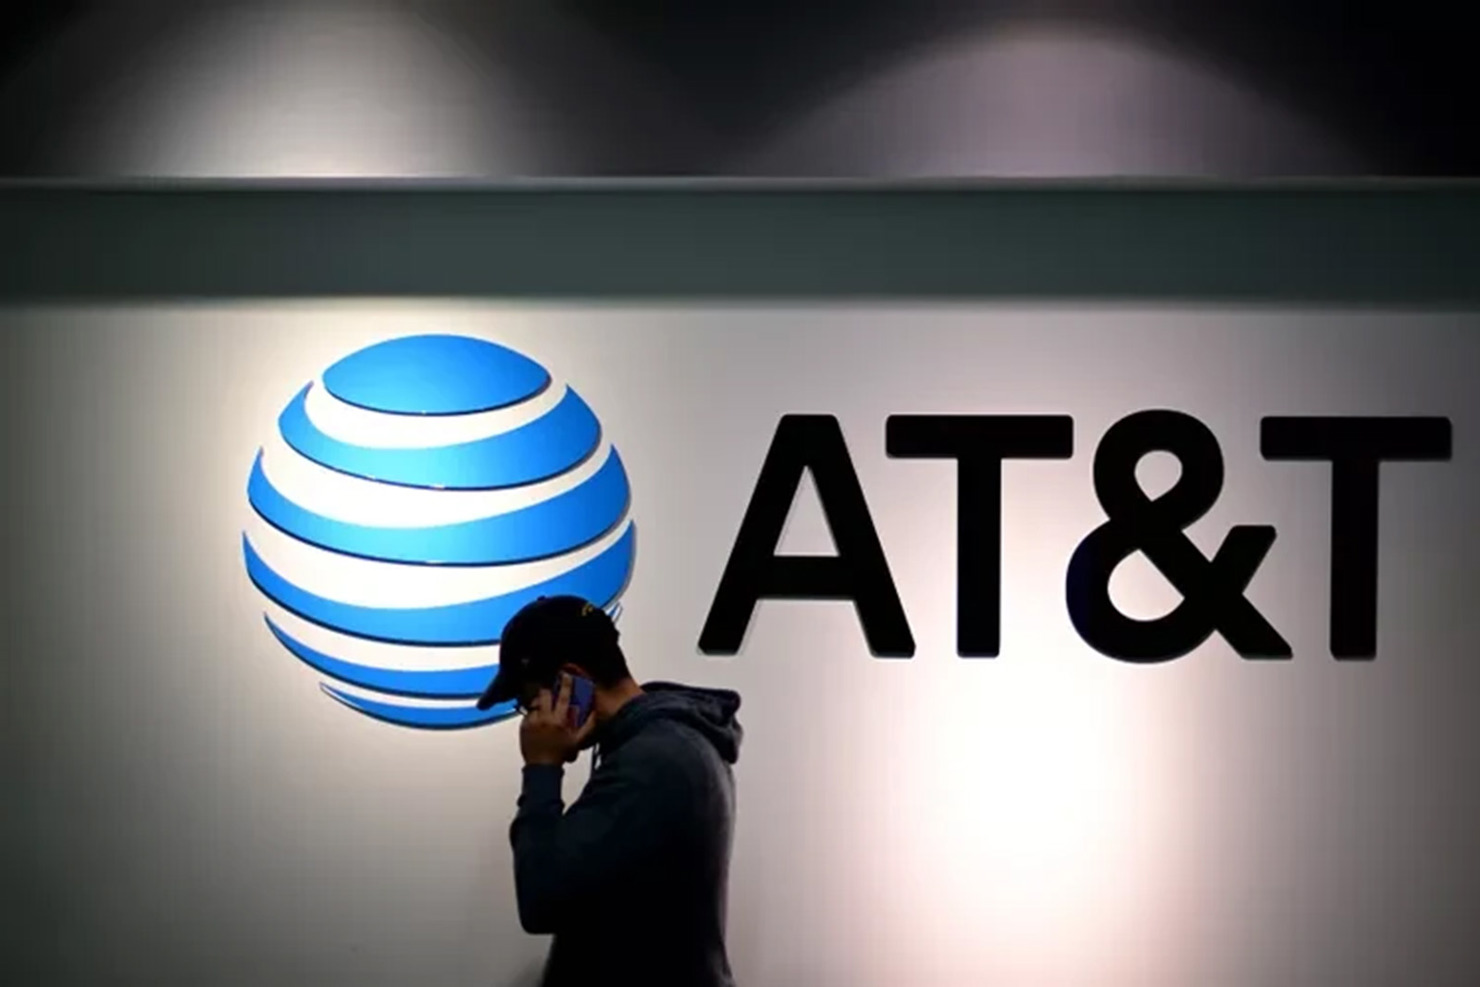 Hàng loạt thông tin thuê bao của khách hàng nhà mạng AT&T đã bị hacker tấn công và lấy cắp